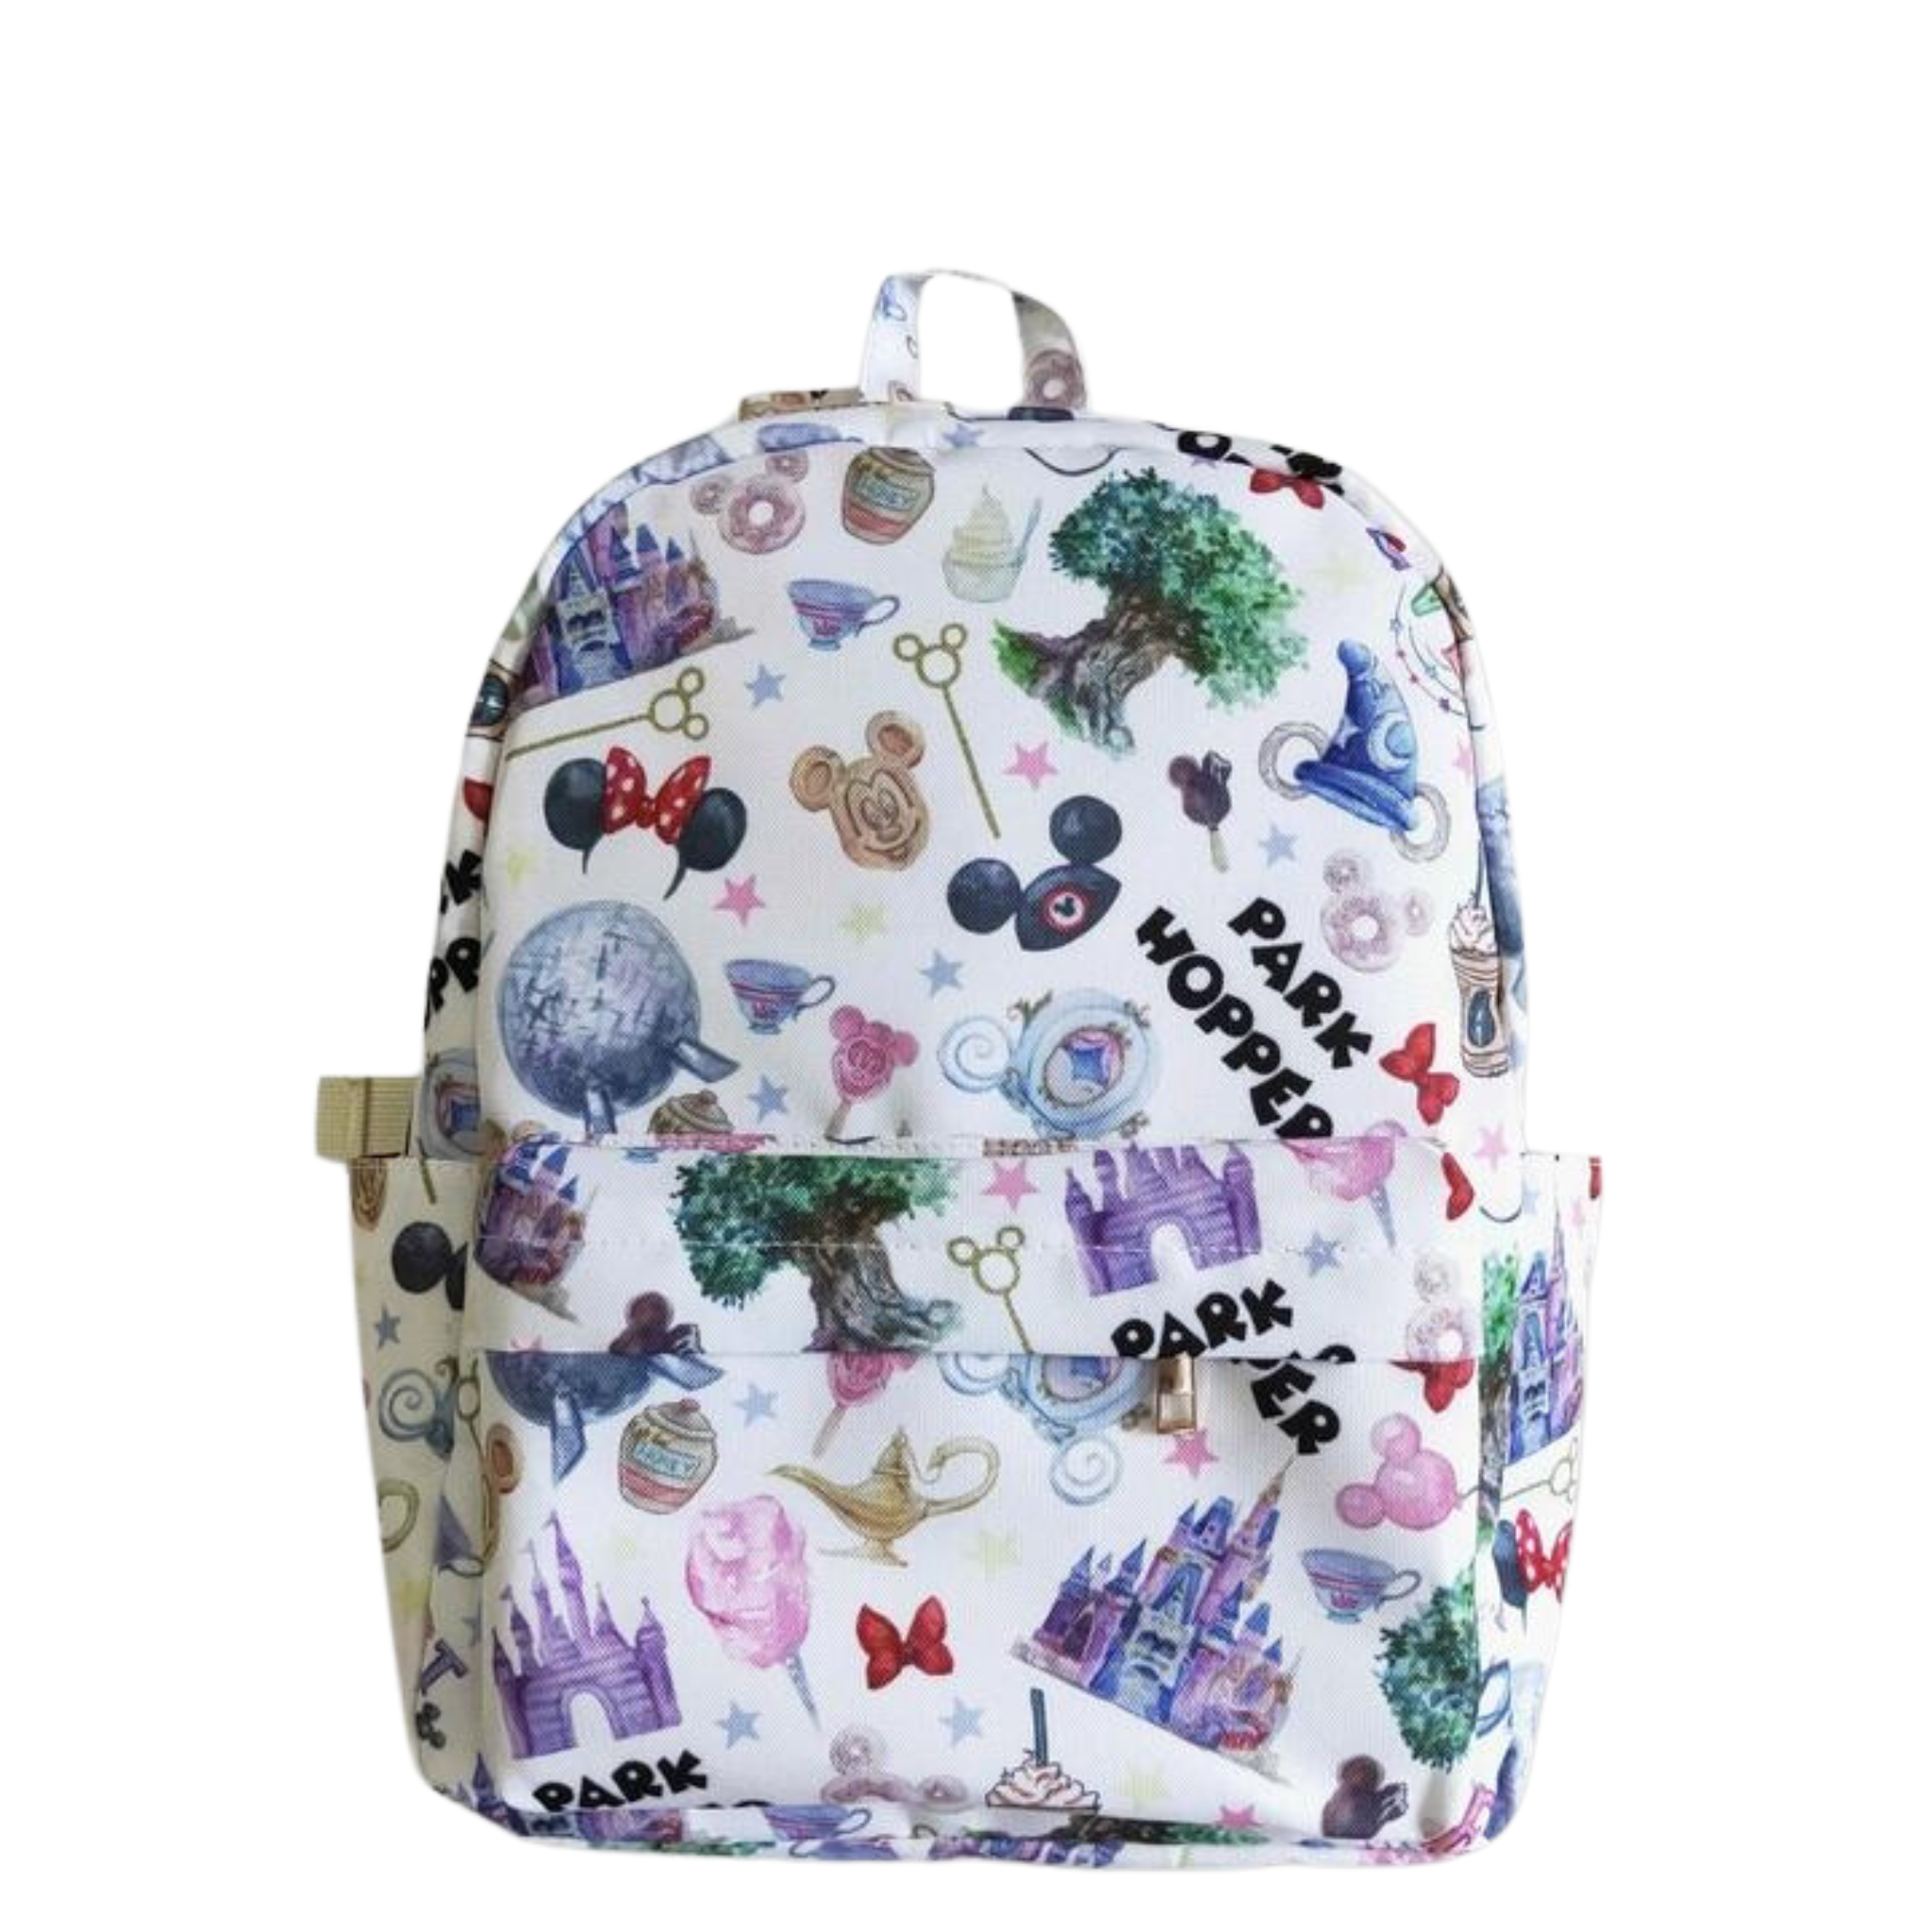 Magic Kingdom Inspired Back To School Backpack